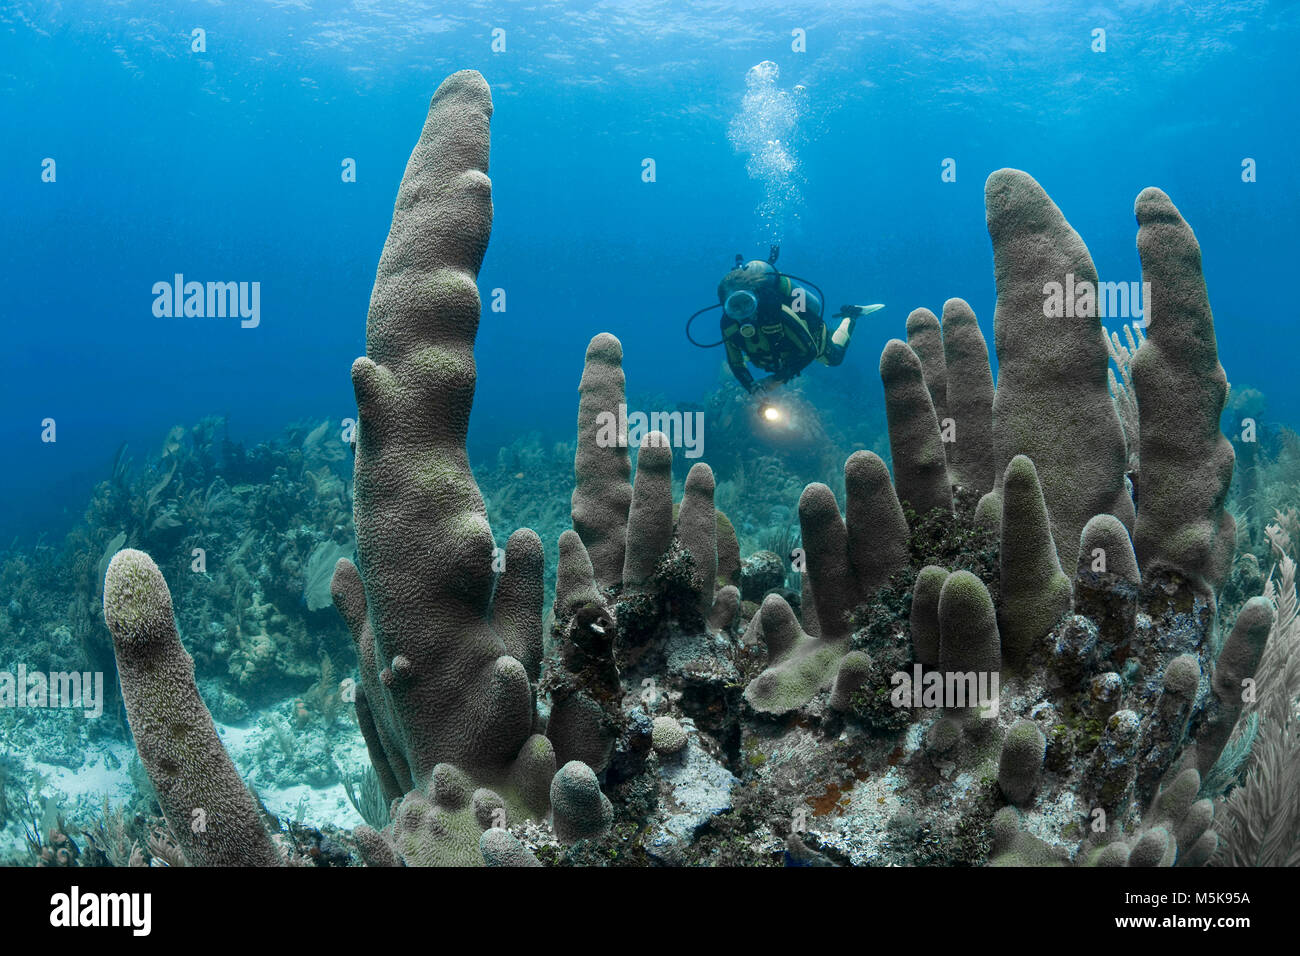 Scuba Diver in corrispondenza di un pilastro coral (Dendrogyra cylindrus), scogliera corallina caraibica di Palmetto Bay, Roatan Island, Bay Islands in Honduras Caraibi Foto Stock